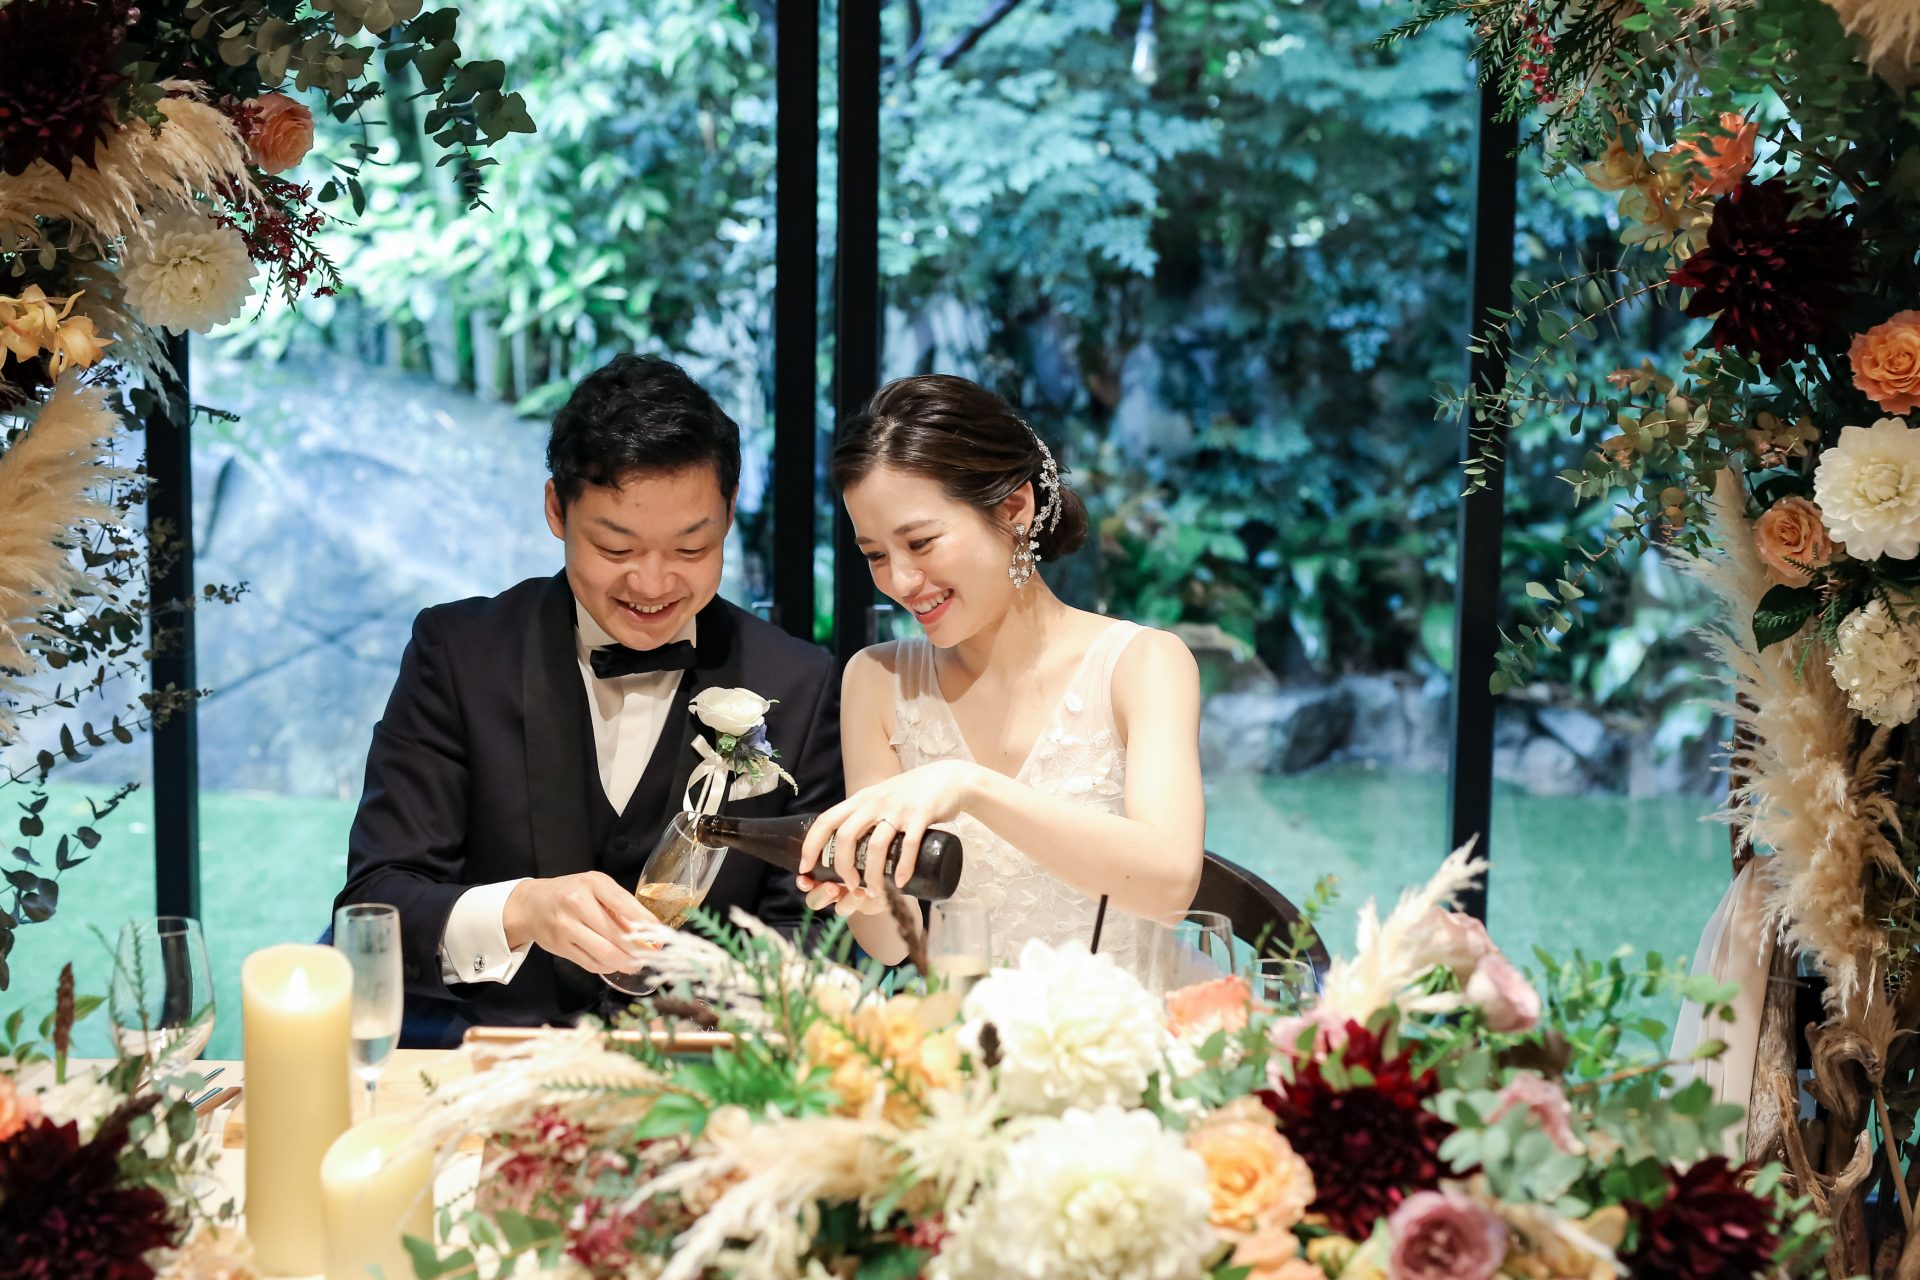 結婚式のテーブルコーディネートの装花には緑と白と暖色カラーを合わせて華やかな印象に